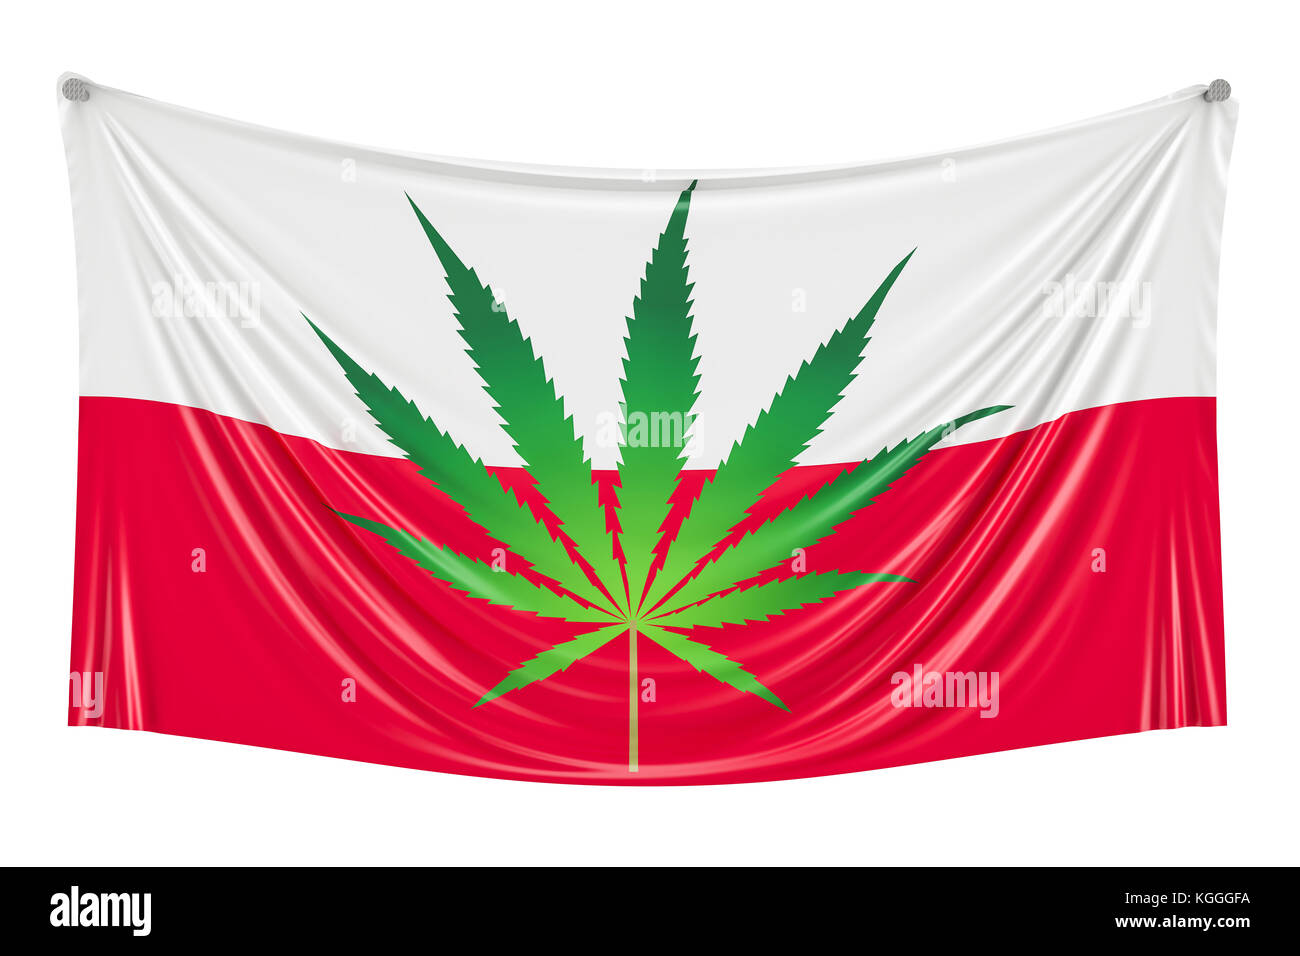 Légalisation du cannabis en France. Drapeau polonais avec des feuilles de marijuana accroché au mur, 3D Rendering Banque D'Images